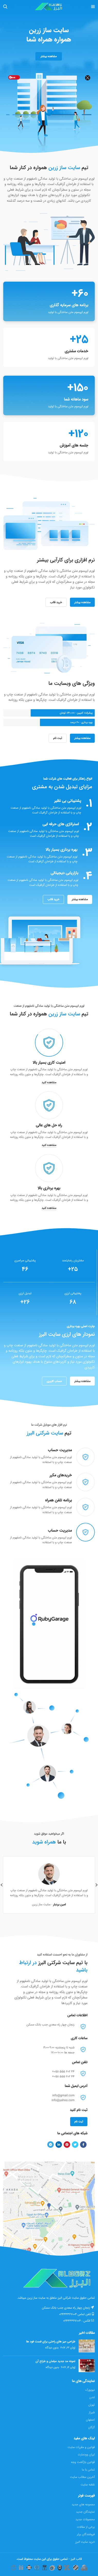  تصویر سایت البرز در حالت موبایل 